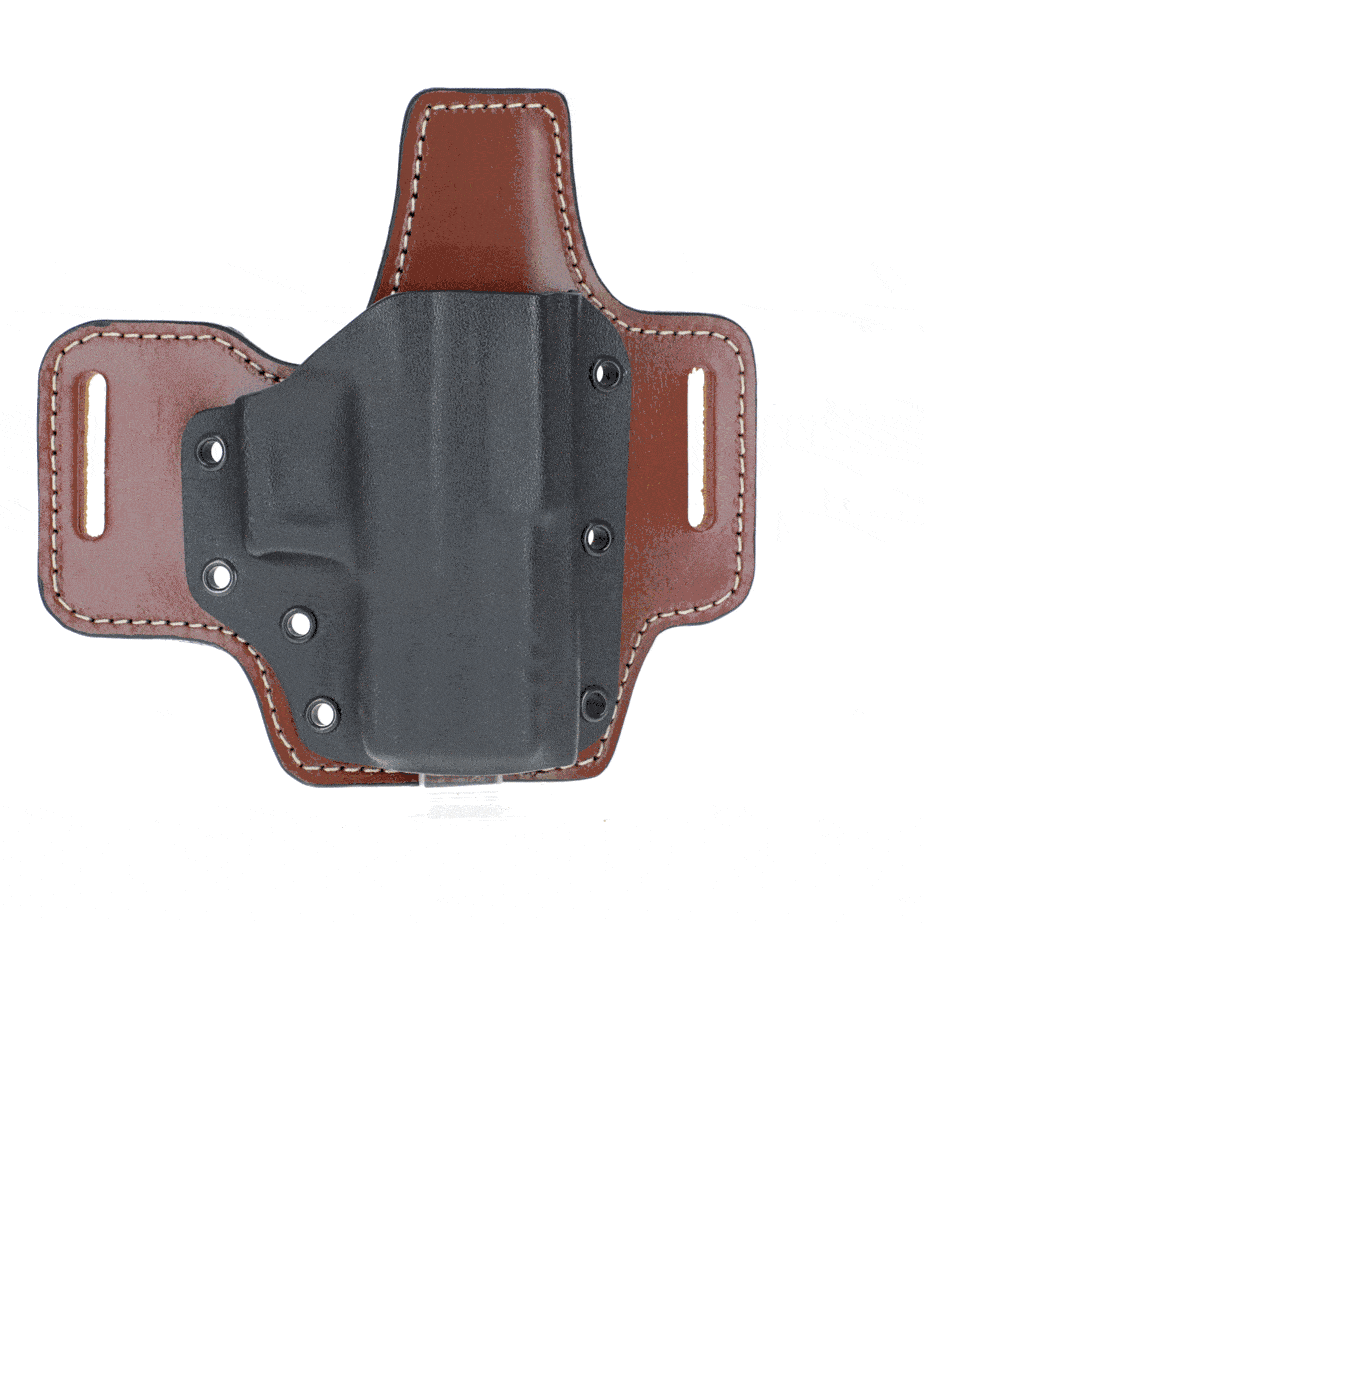 Kydex belt holster on leather platform model C904-2021